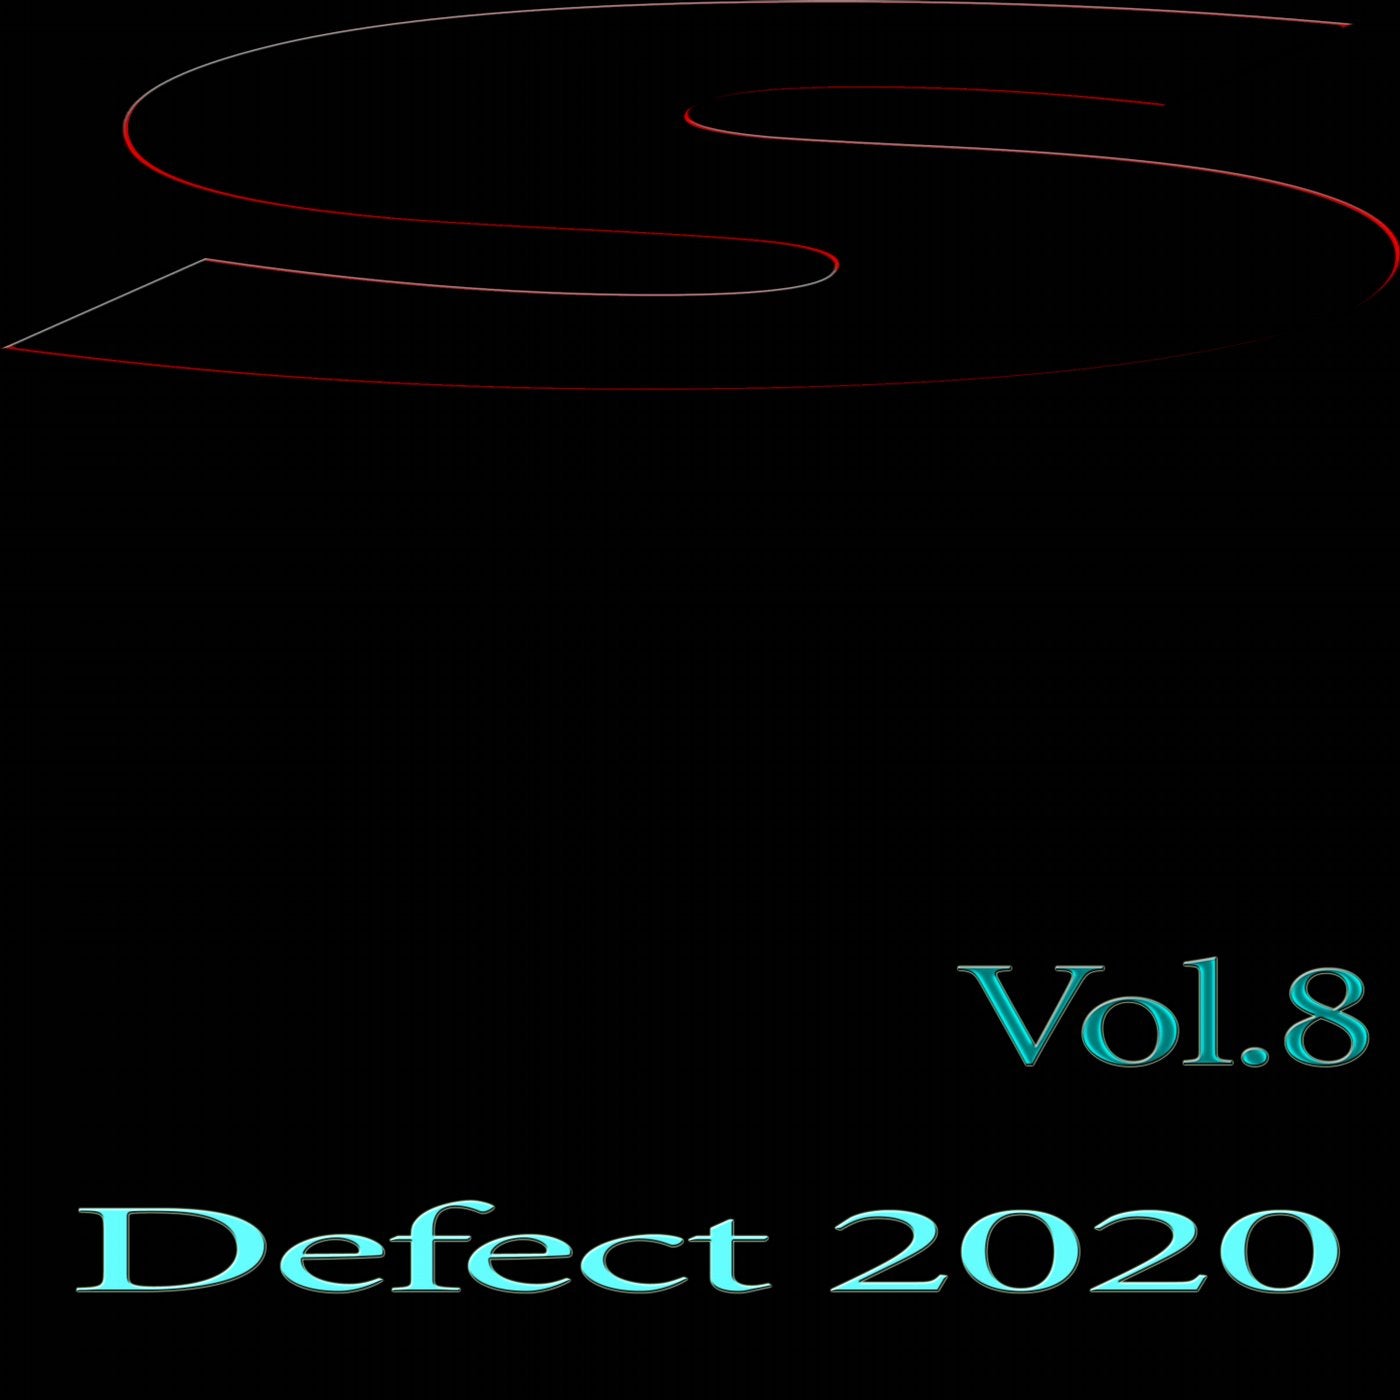 Defect 2020, Vol.8